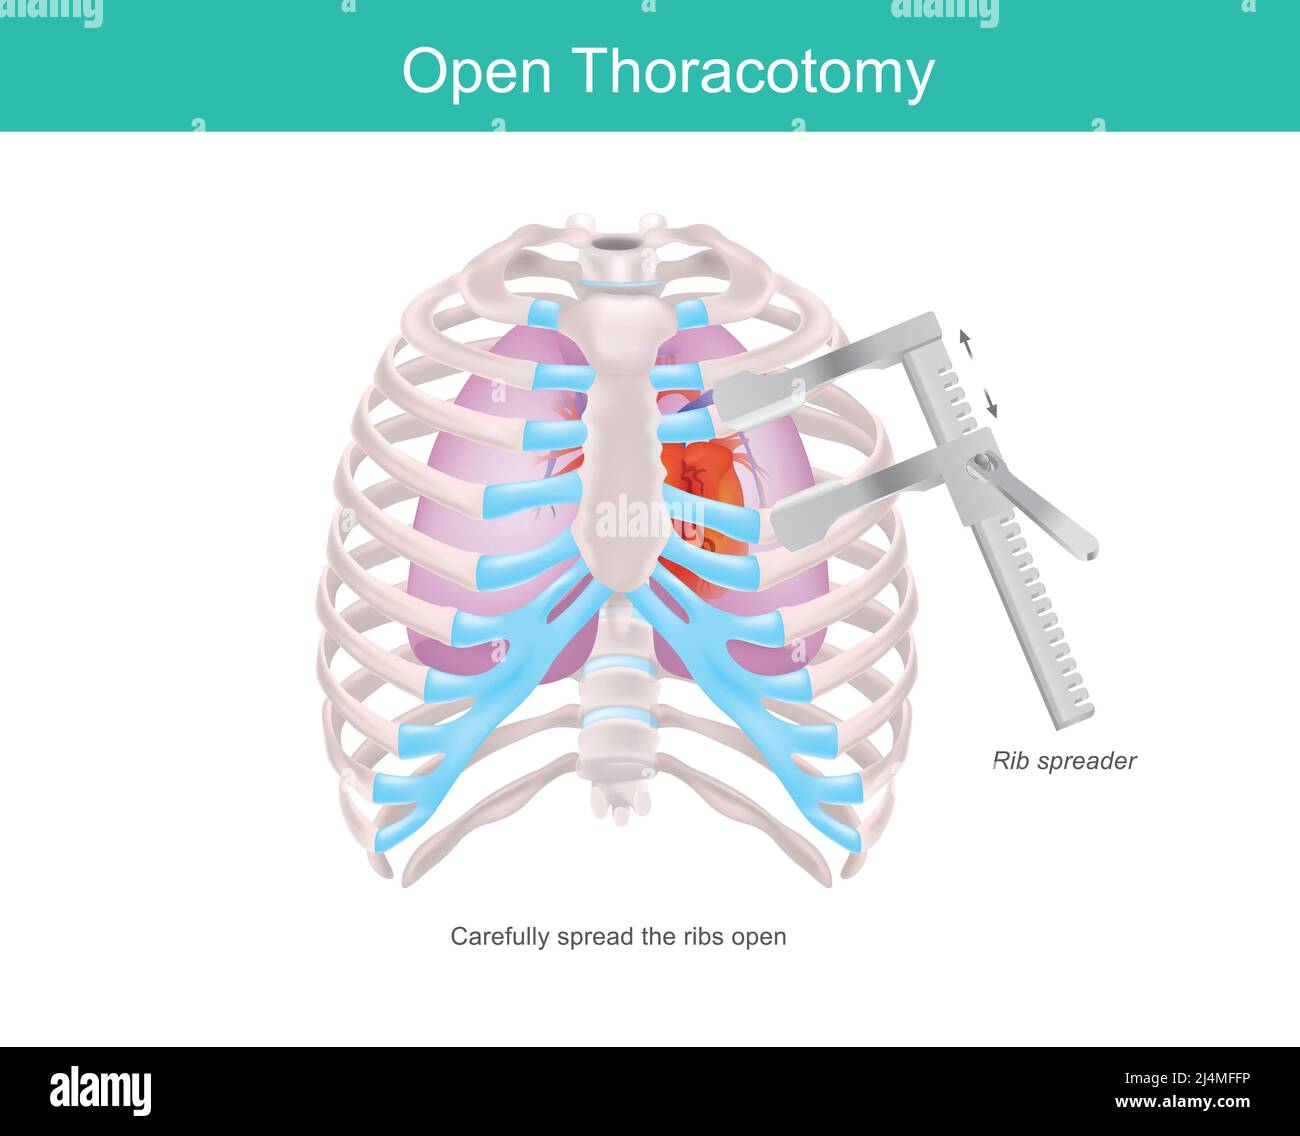 Toracotomía abierta. Procedimiento para acceder al espacio pleural del tórax humano mediante una herramienta médica llamada esparcidor de costillas. Ilustración del Vector